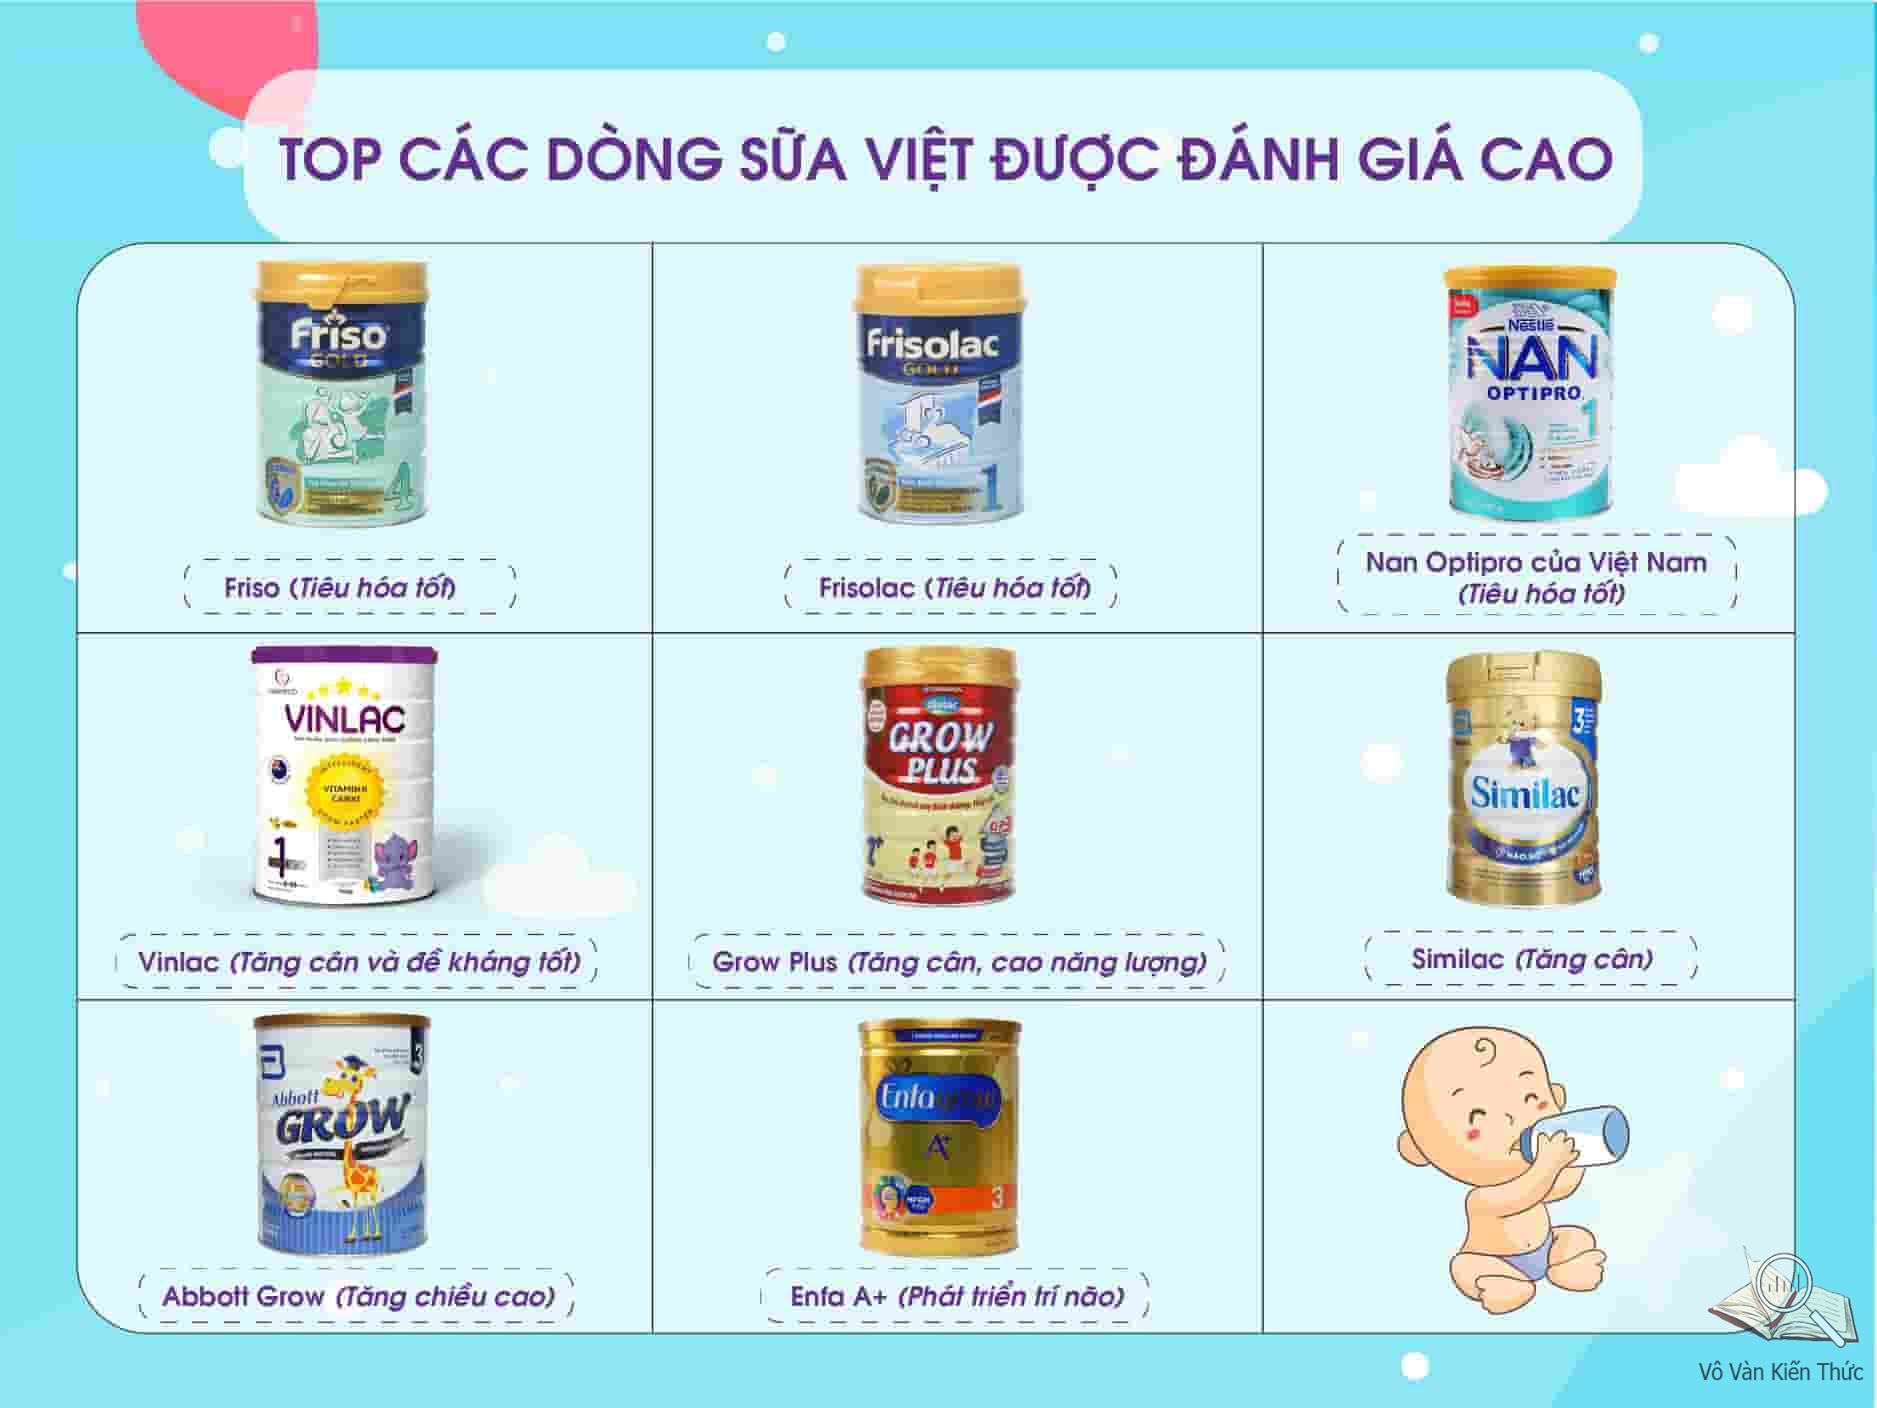 Top các dòng sữa Việt được đánh giá cao